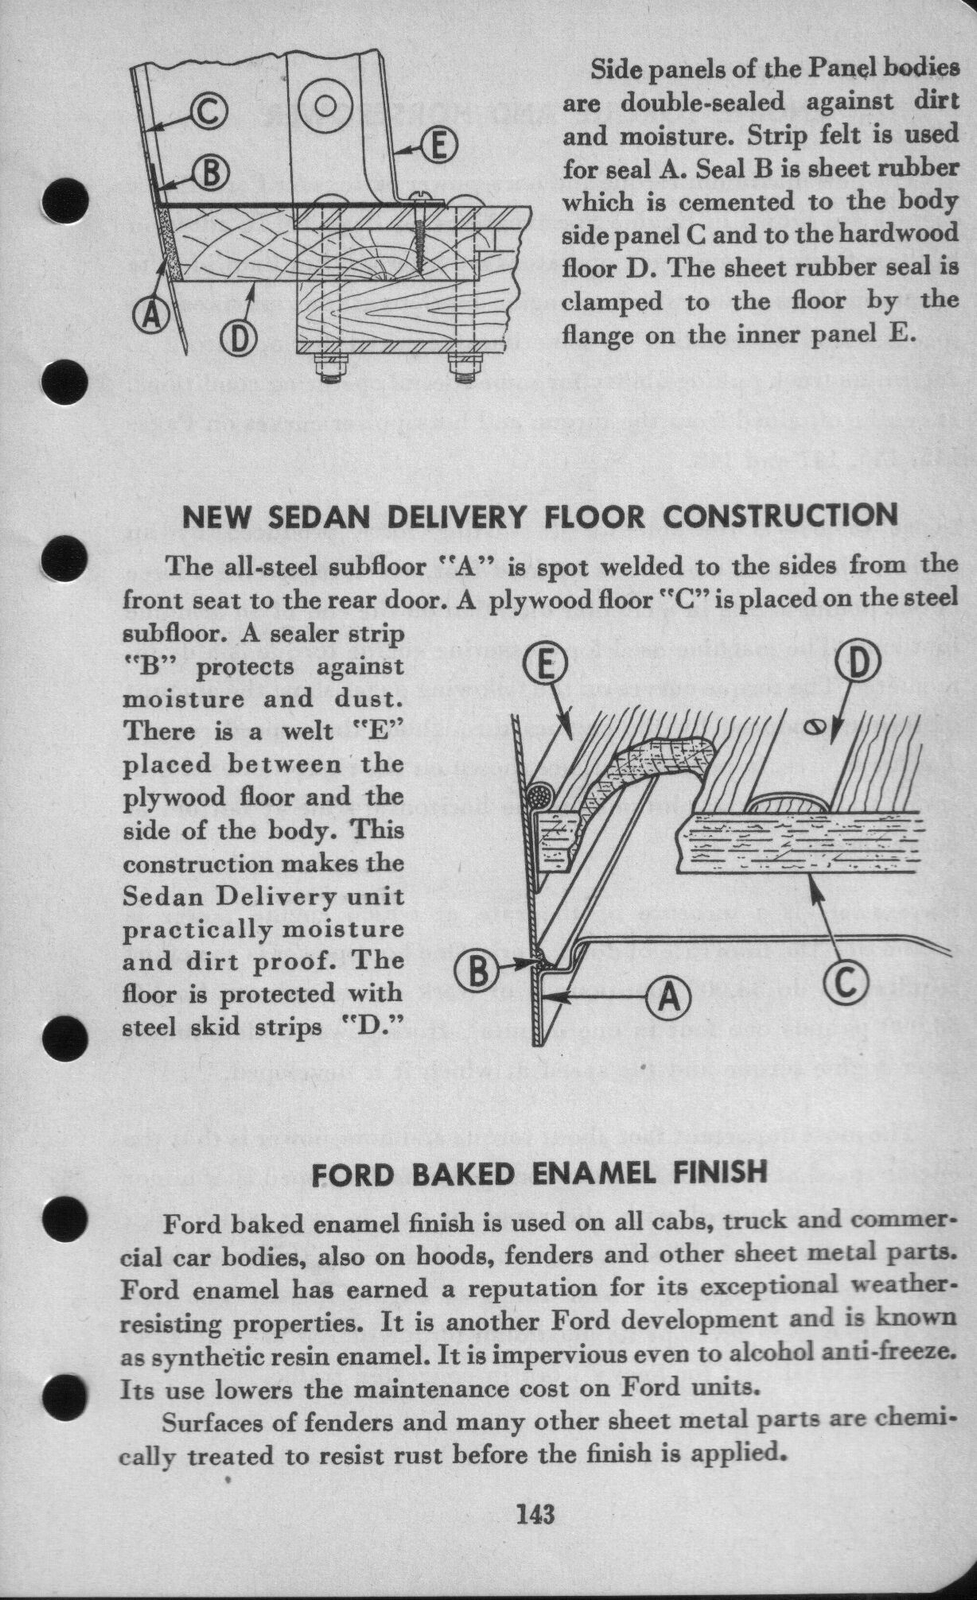 n_1942 Ford Salesmans Reference Manual-143.jpg